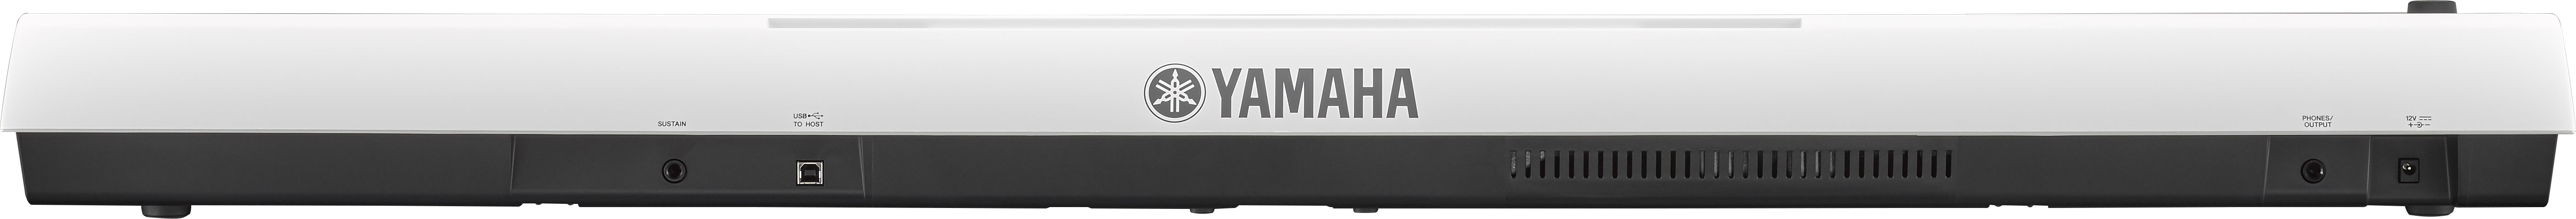 Yamaha Np-32 - White - Piano digital portatil - Variation 1